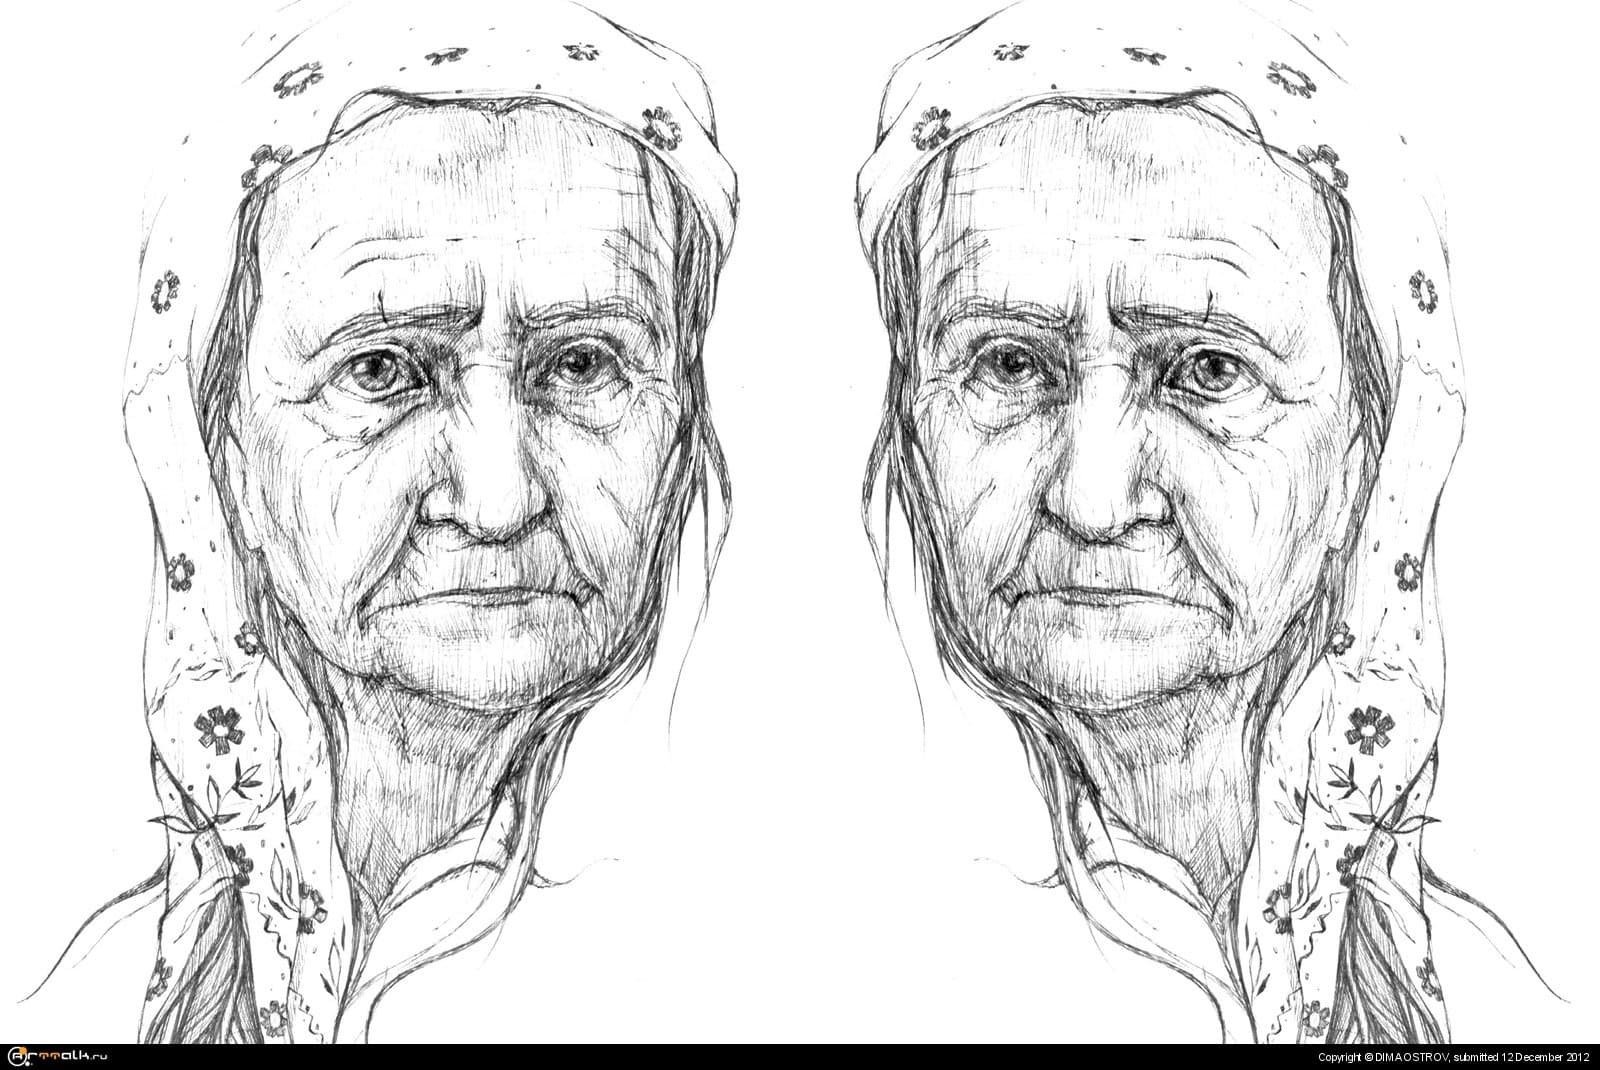 Создаем живописный портрет пожилого человека. Старуха Изергиль иллюстрации. Старуха из Изергиль портрет. Портрет бабушки. Портрет пожилого человека.